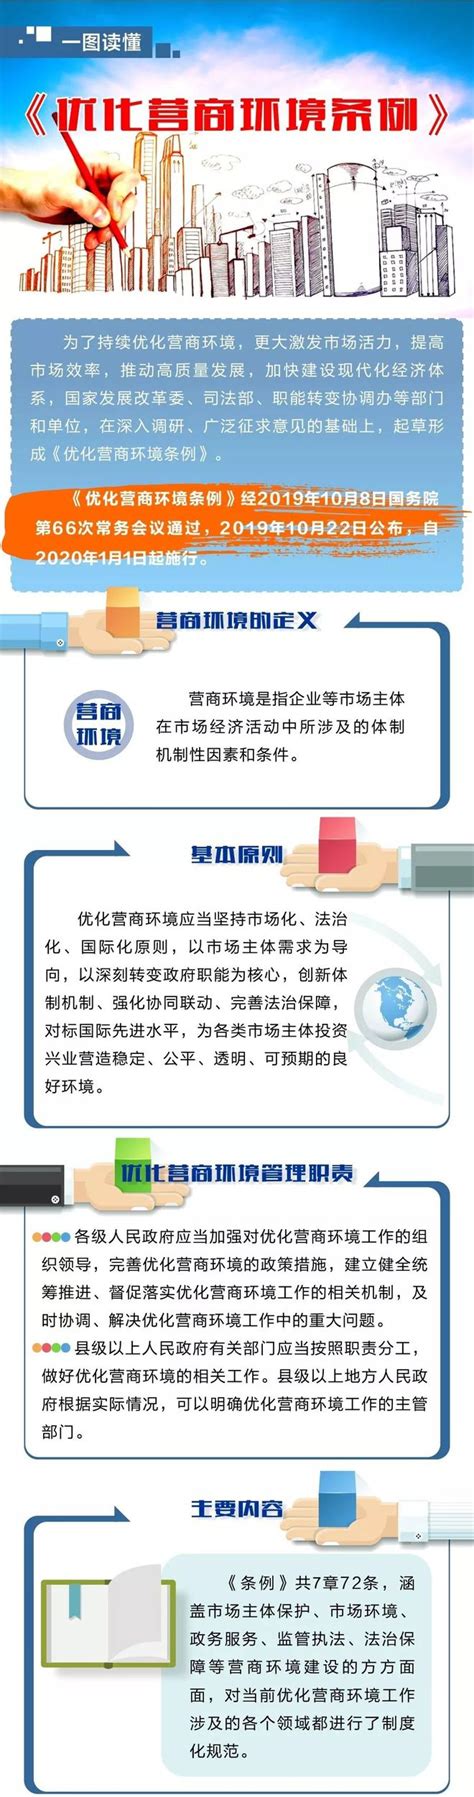 杭州市优化营商环境工作方案